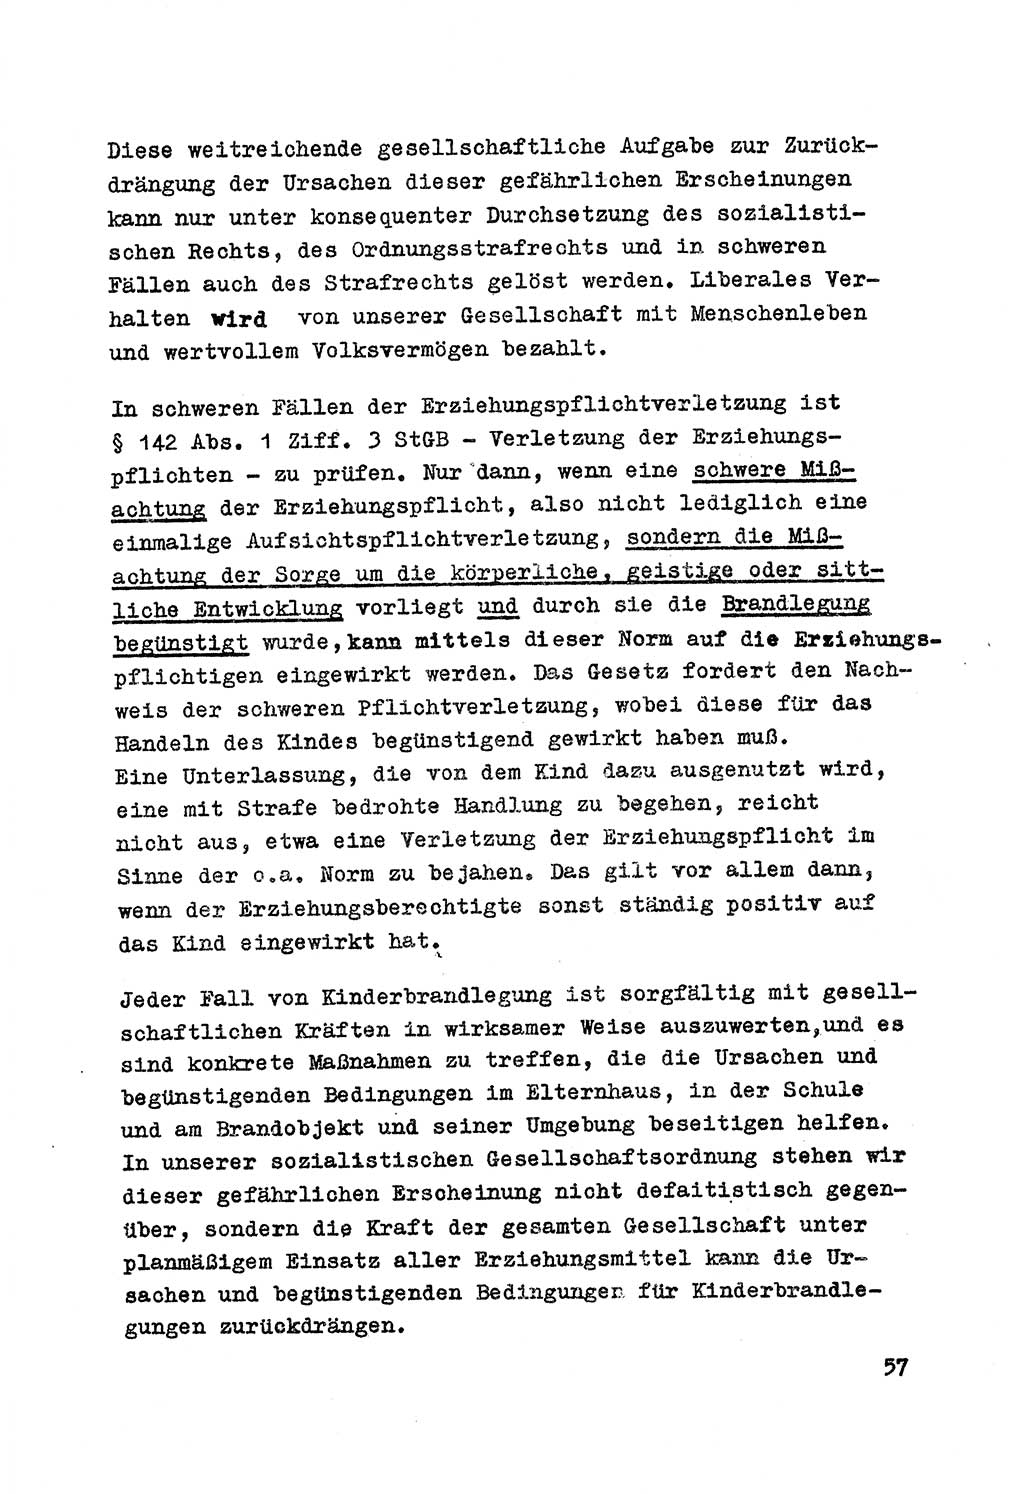 Strafrecht der DDR (Deutsche Demokratische Republik), Besonderer Teil, Lehrmaterial, Heft 7 1970, Seite 57 (Strafr. DDR BT Lehrmat. H. 7 1970, S. 57)